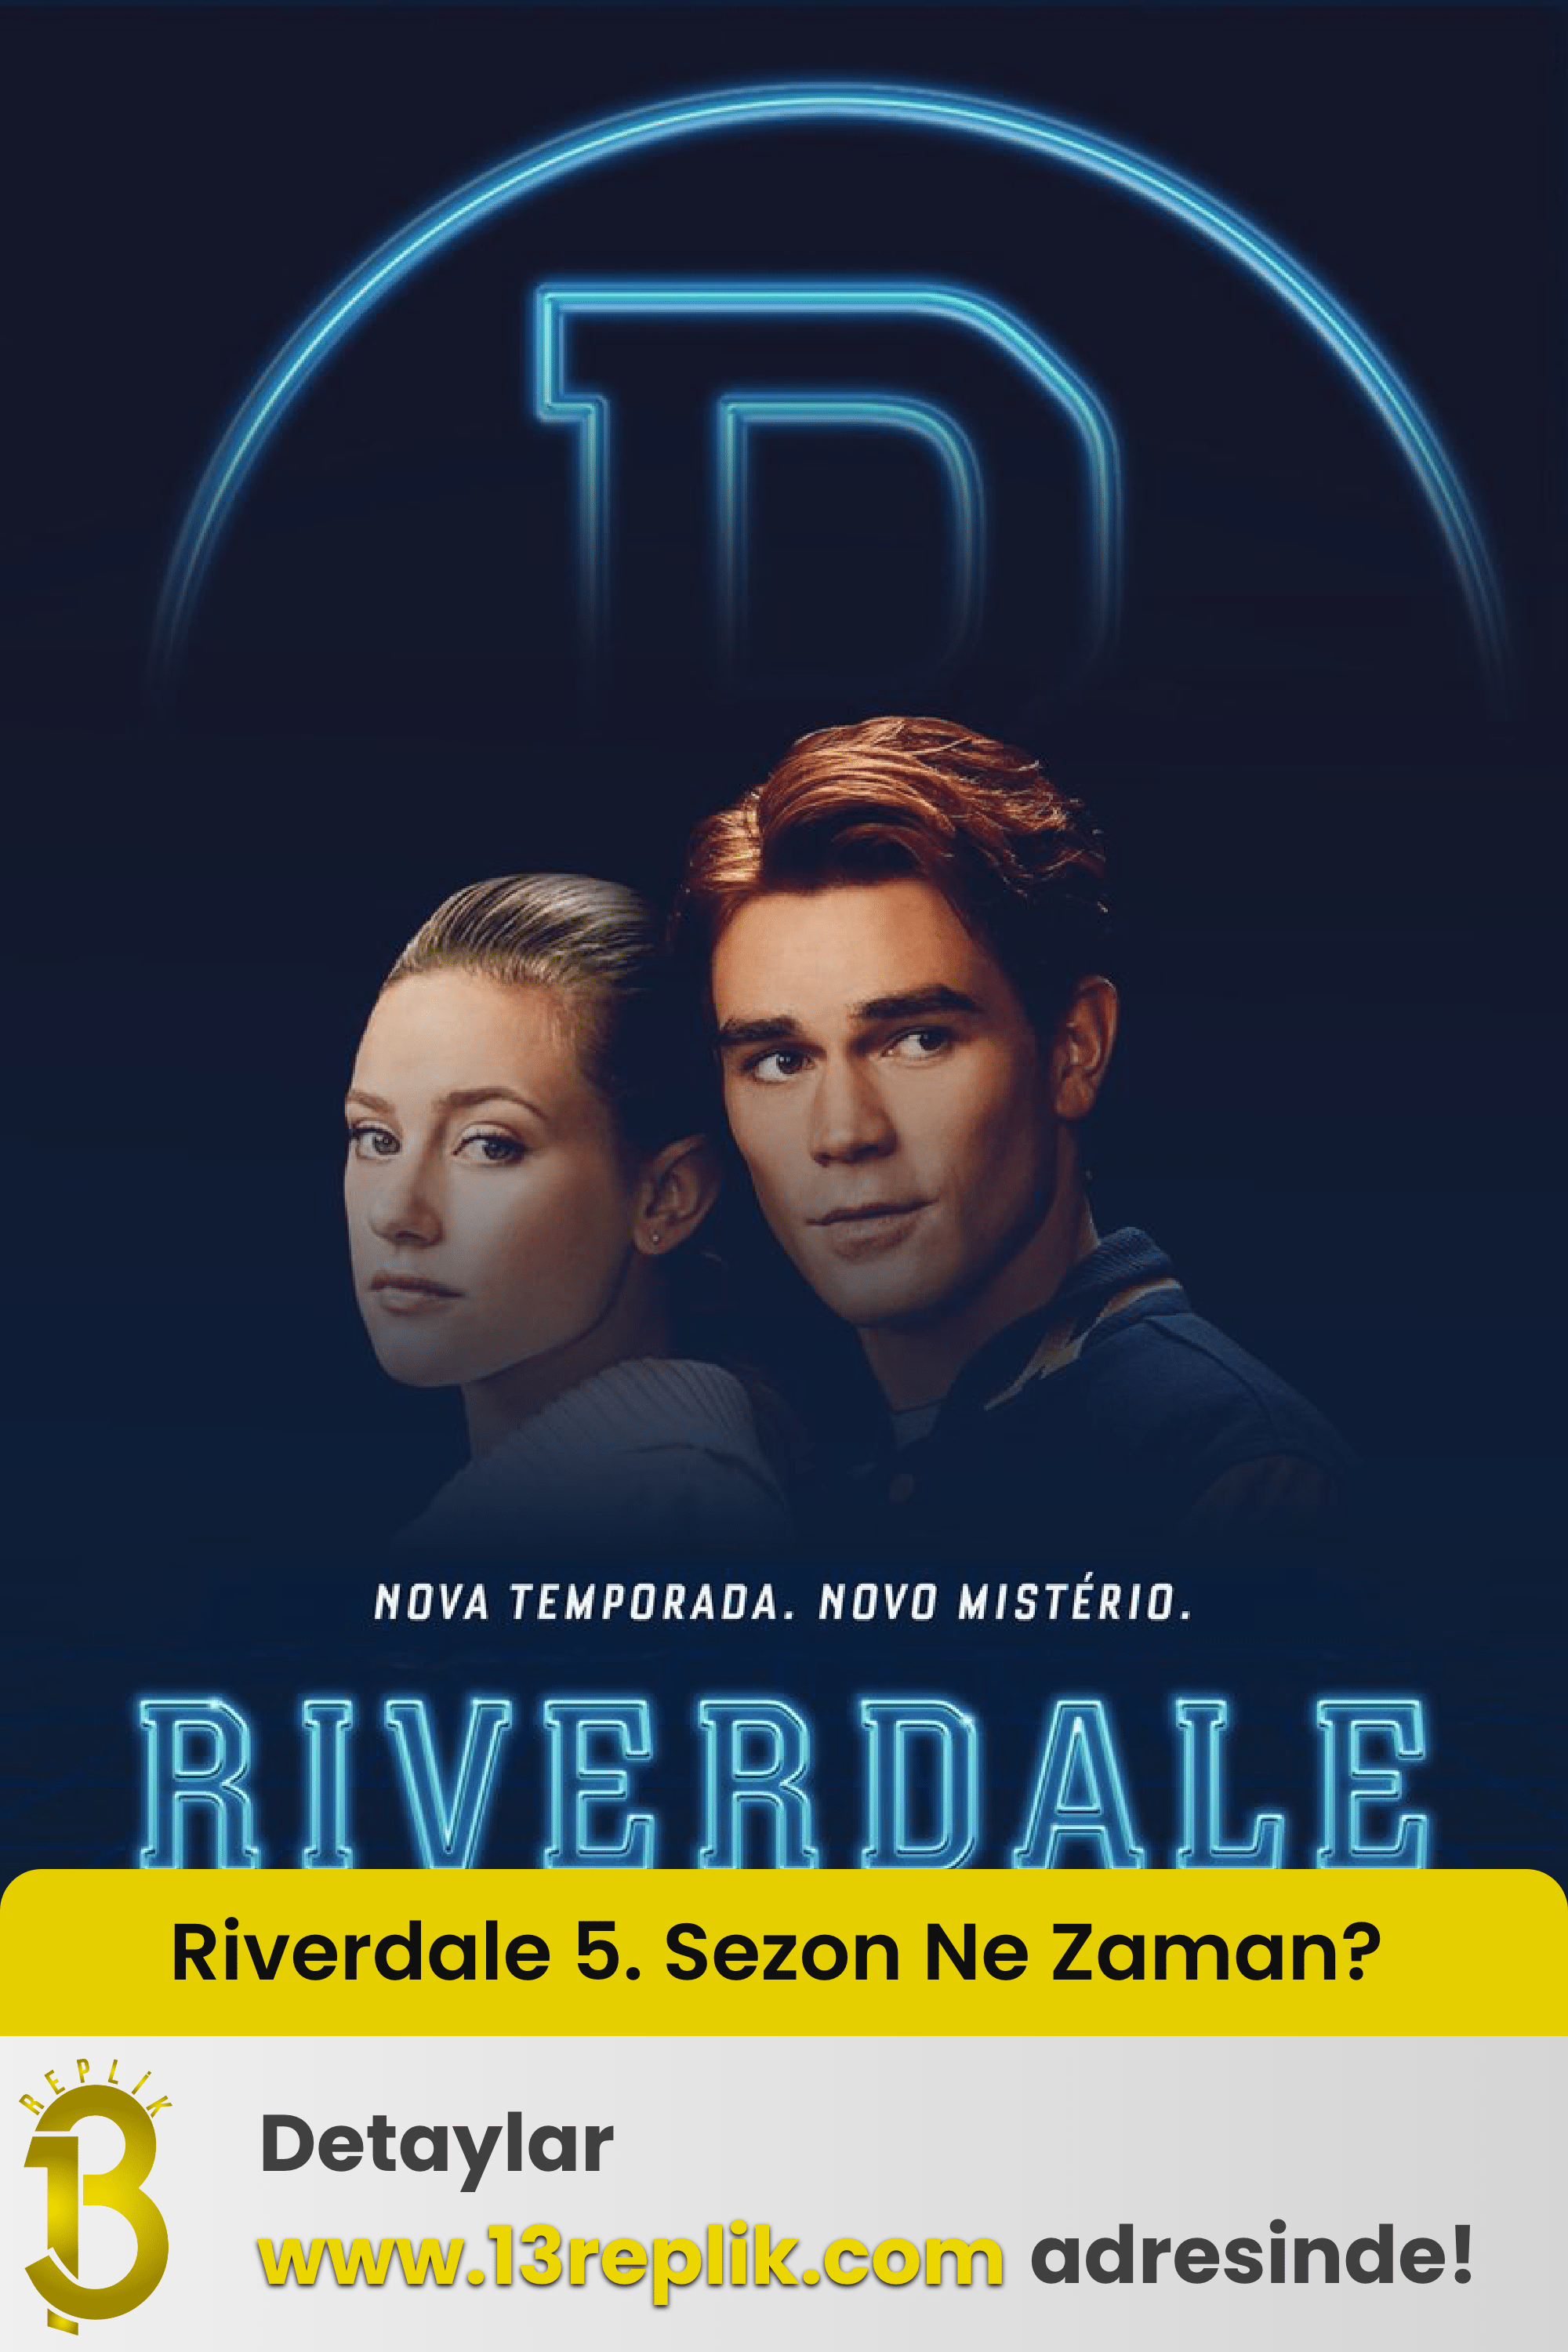 riverdale season 5 release date